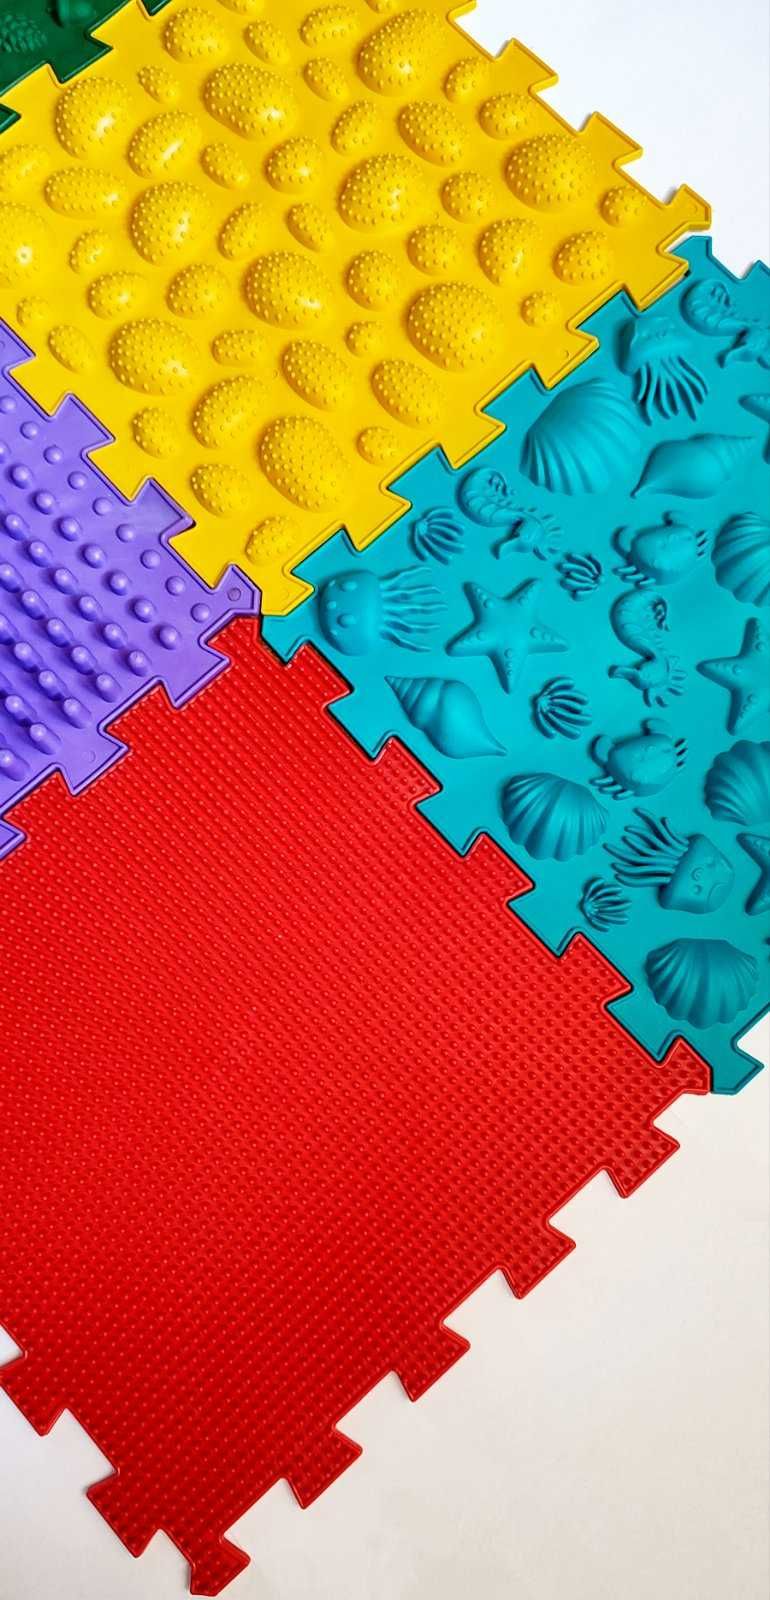 Mata sensoryczna 6 puzzle układanka edukacyjna grechotka sorter dywan